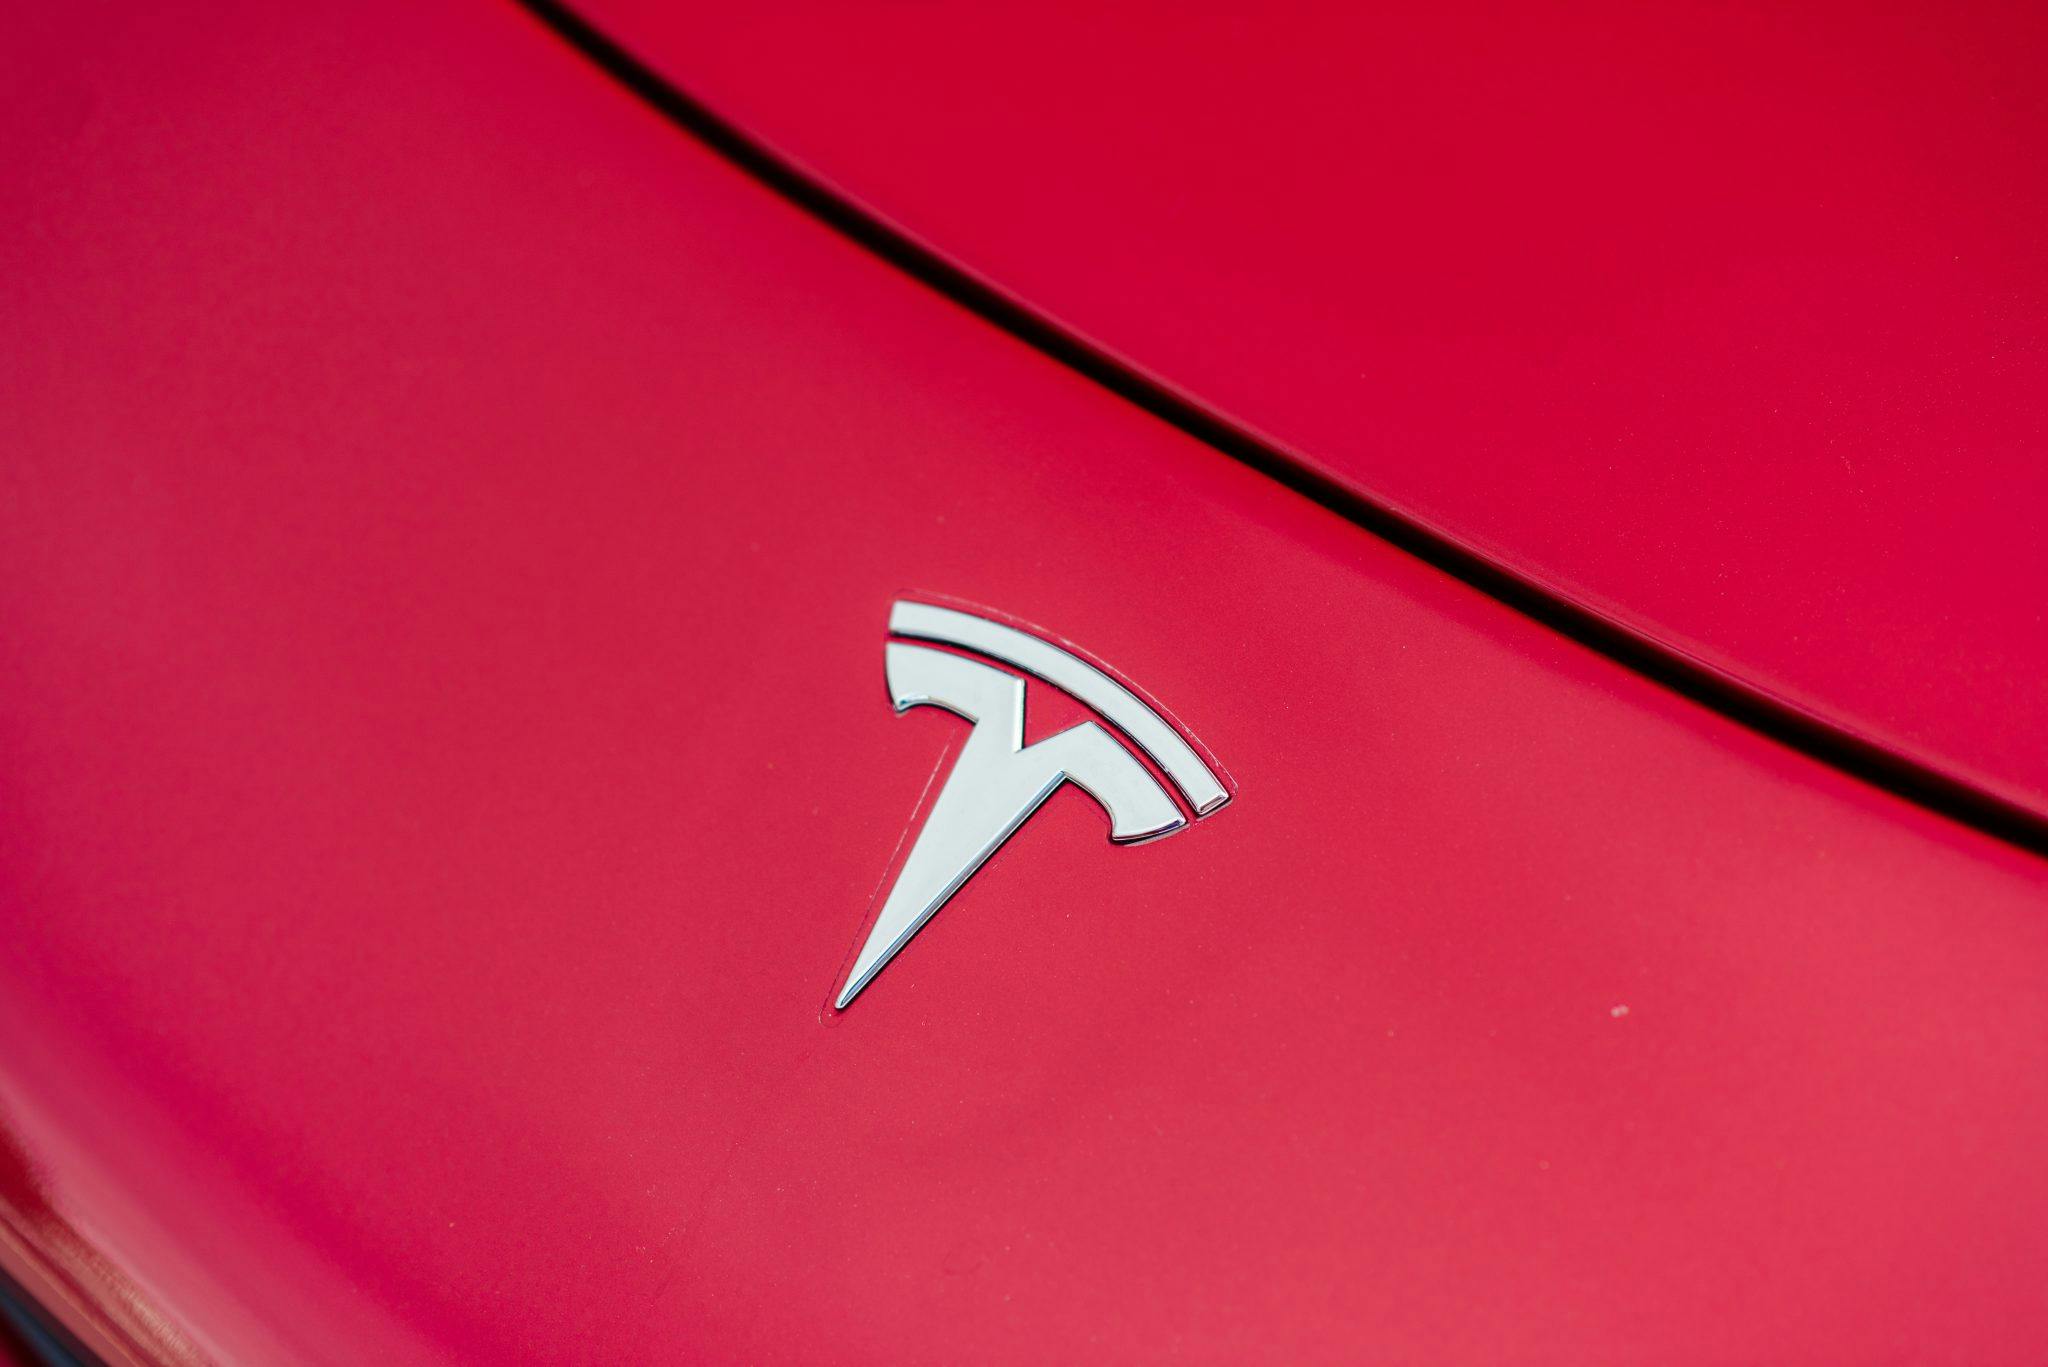 Tesla Roadster logo emblem closeup